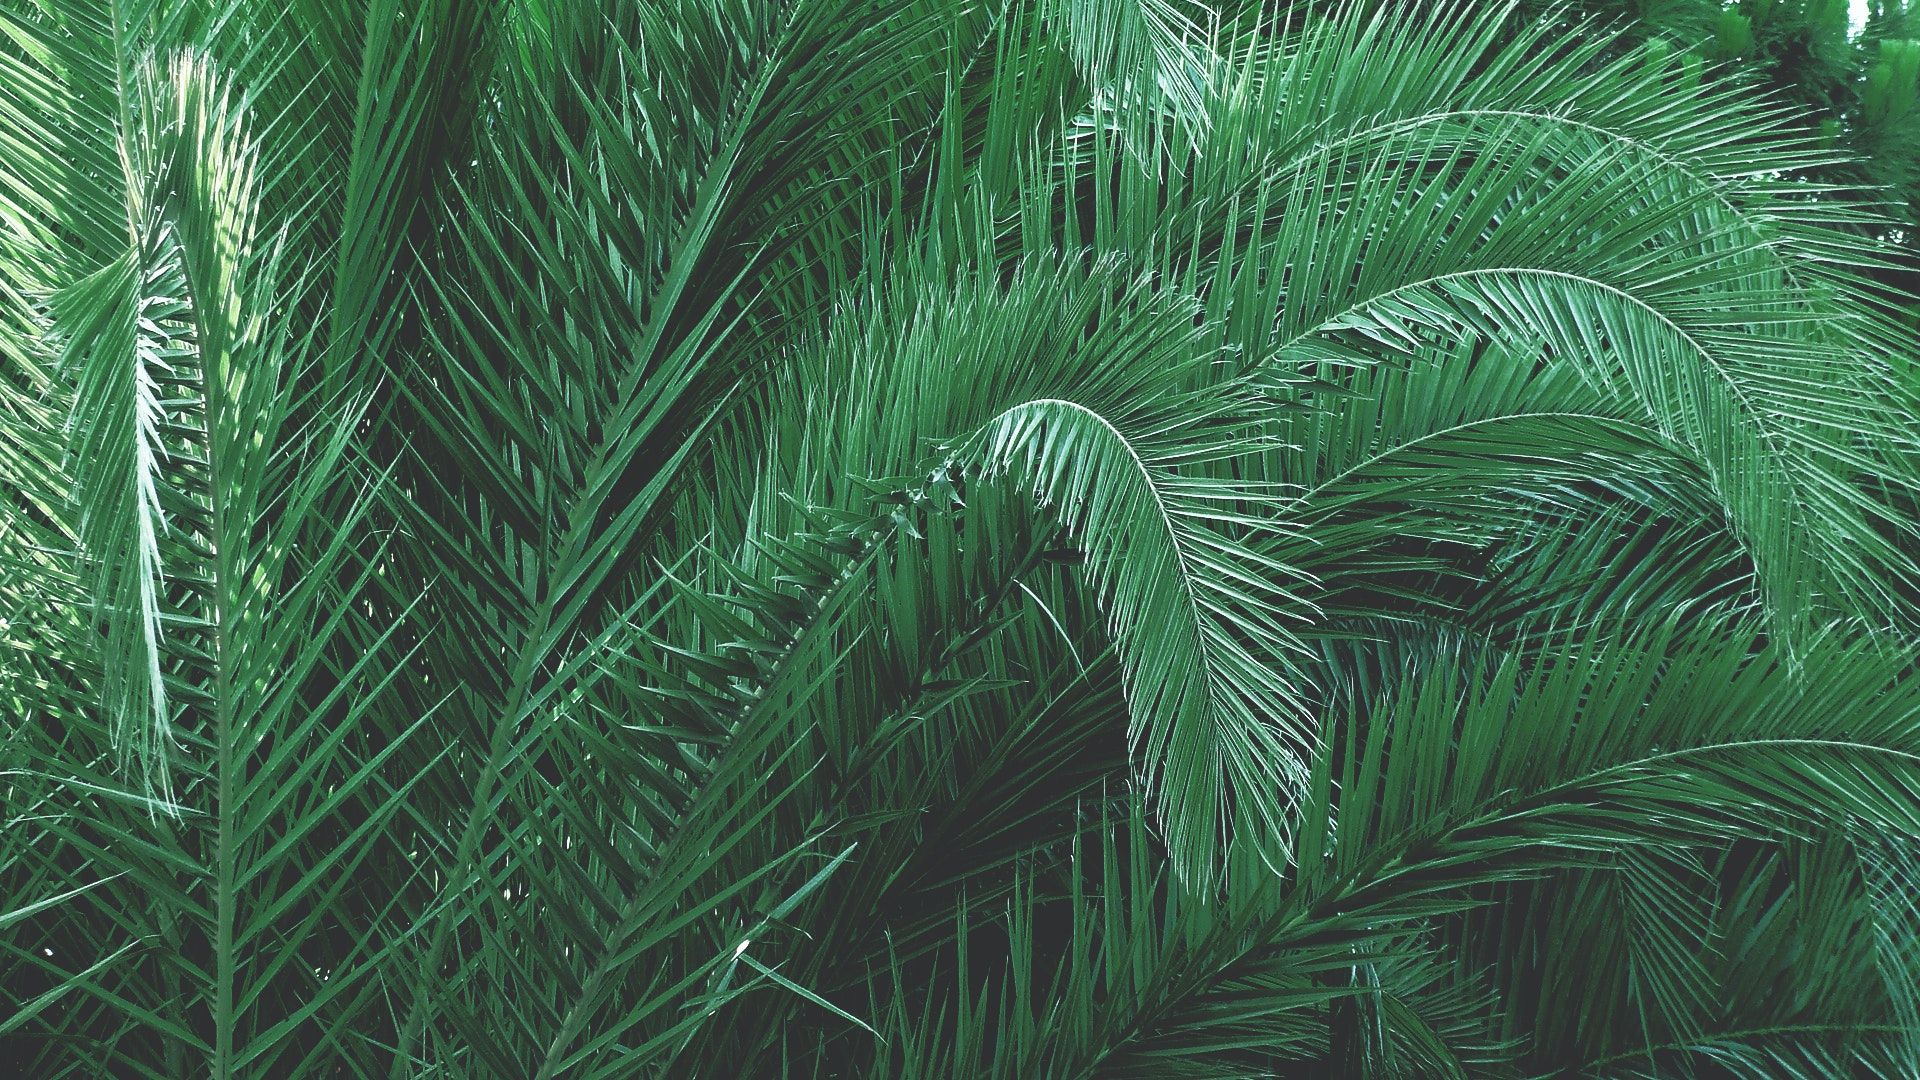 A photo of a palm tree - Palm tree